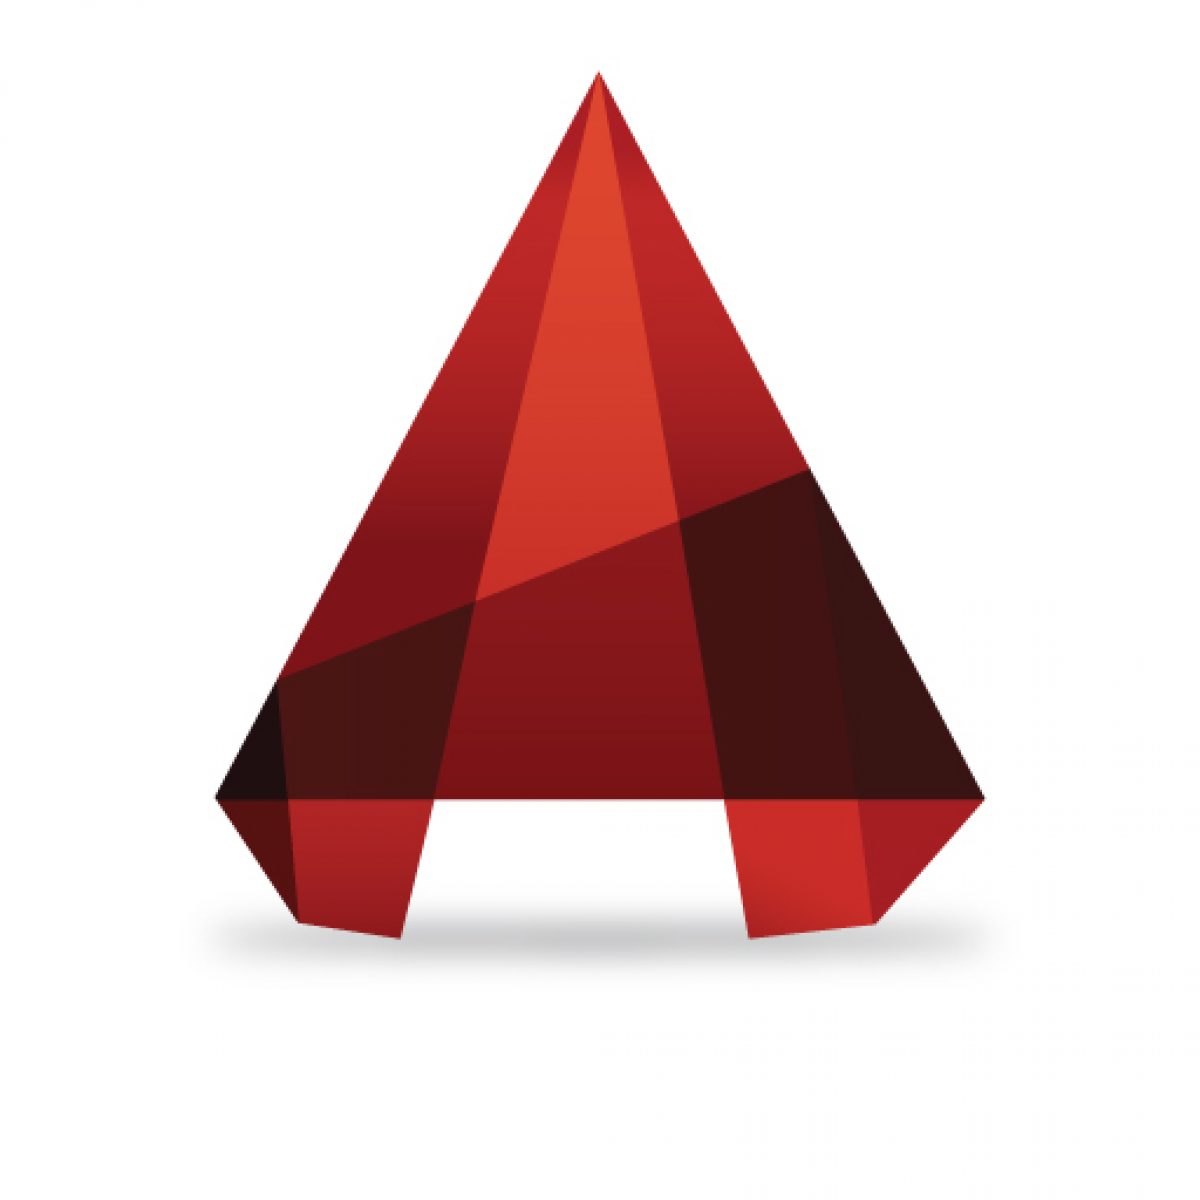 Autocad logo vector download